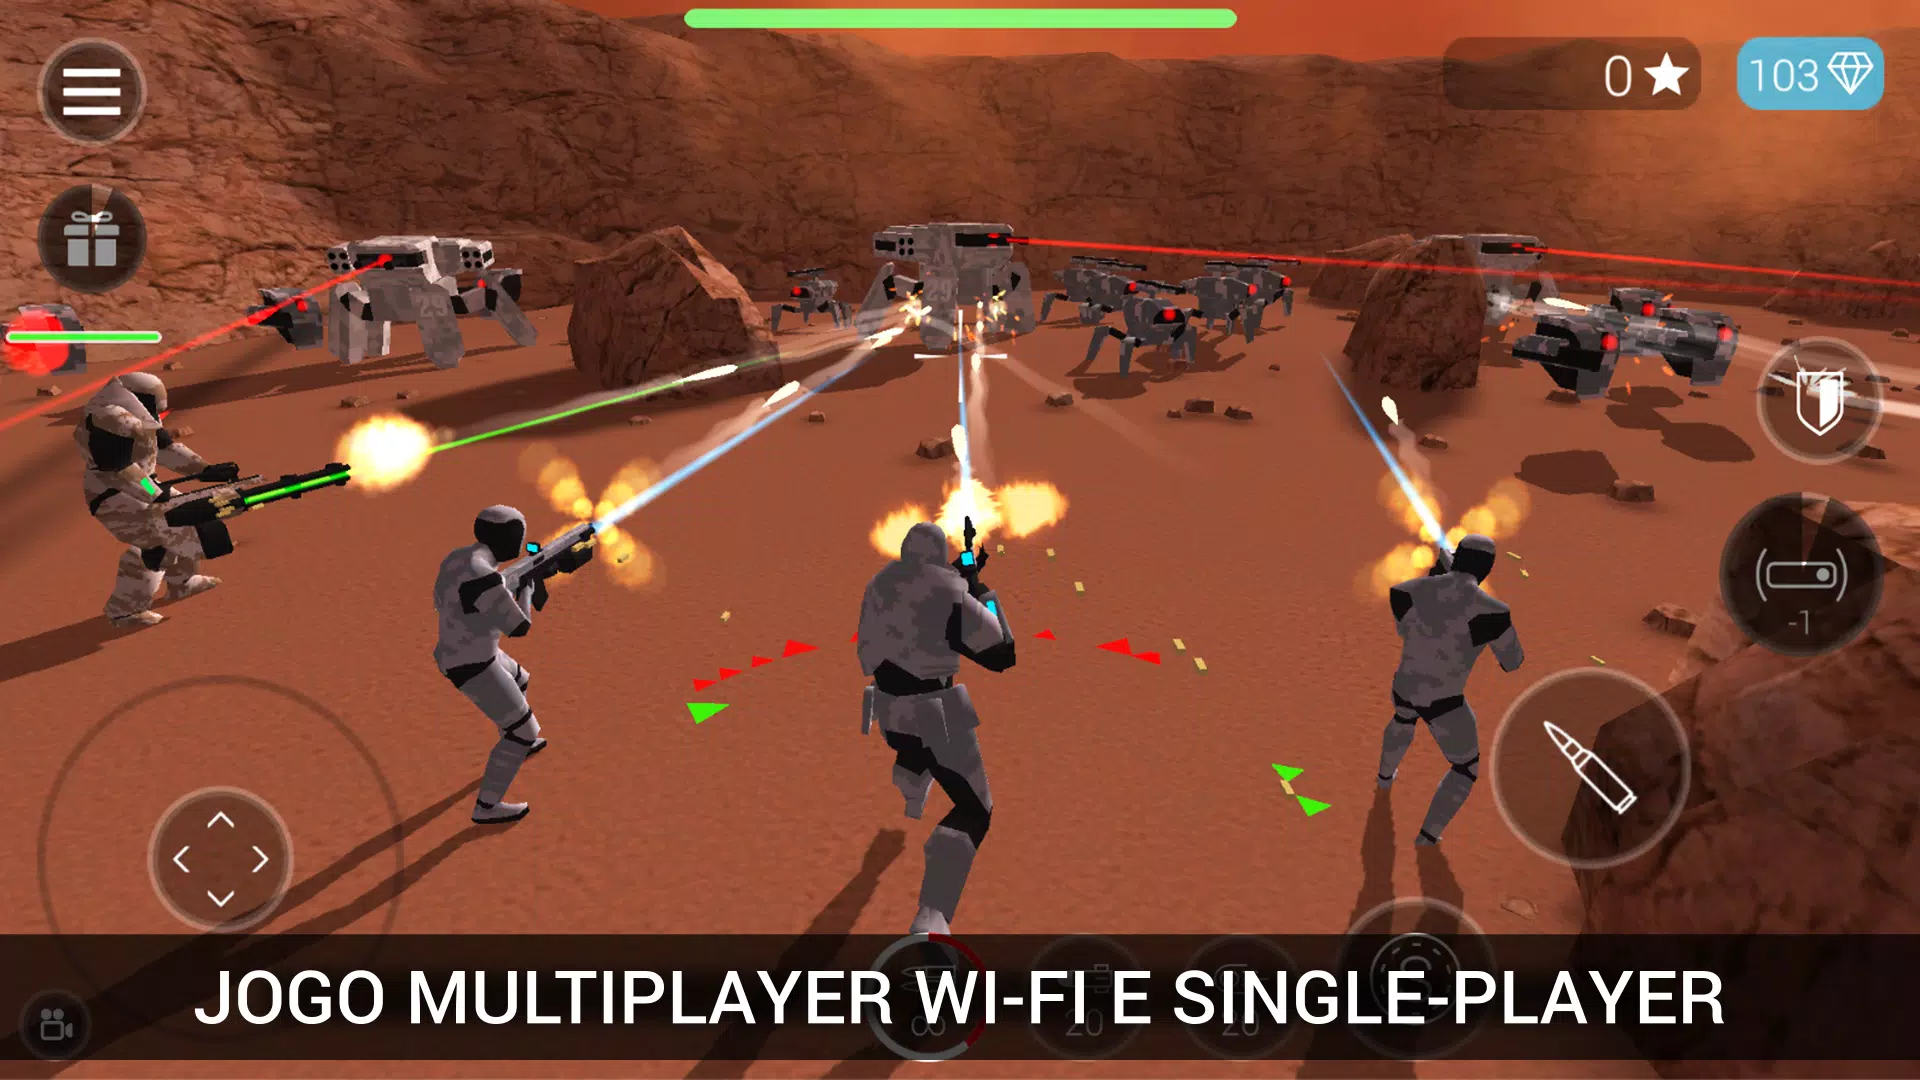 Download do APK de Jogos Multiplayer para Android